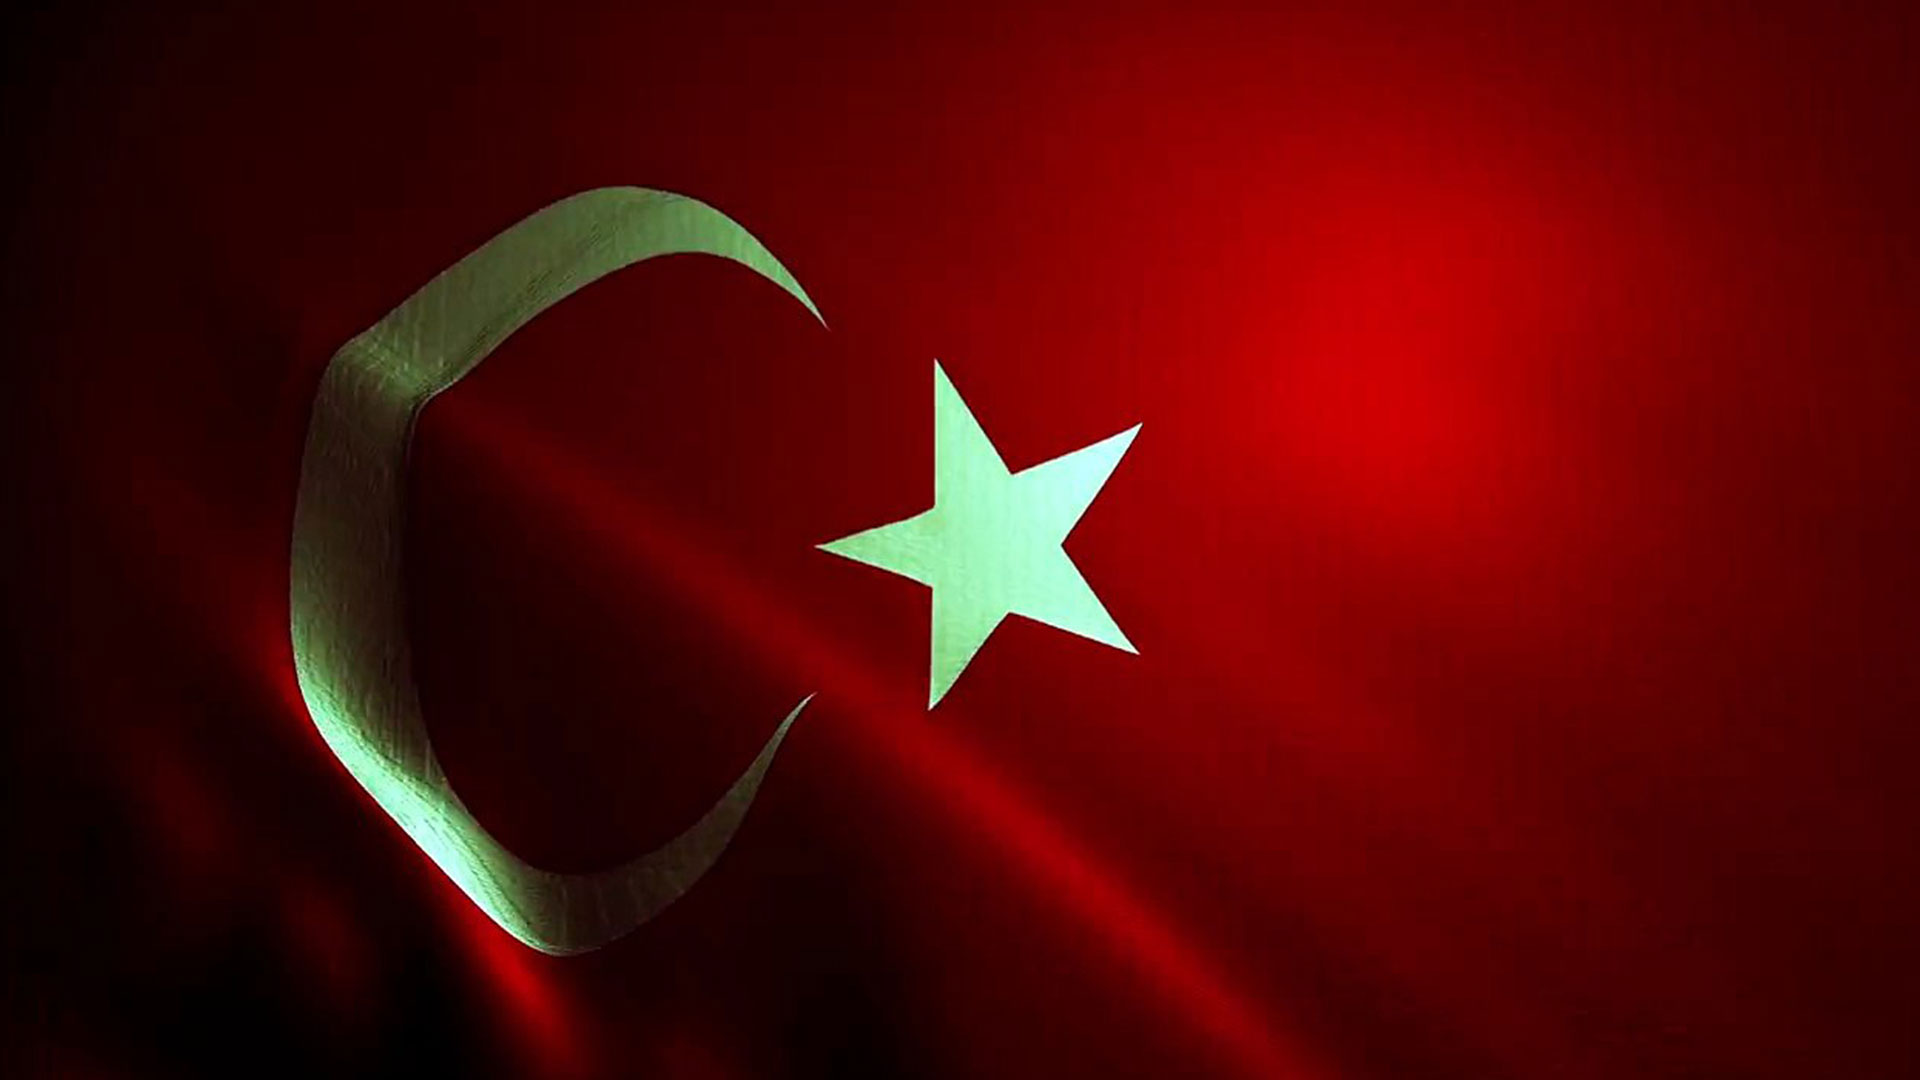 turk bayragi resimleri 2020 4